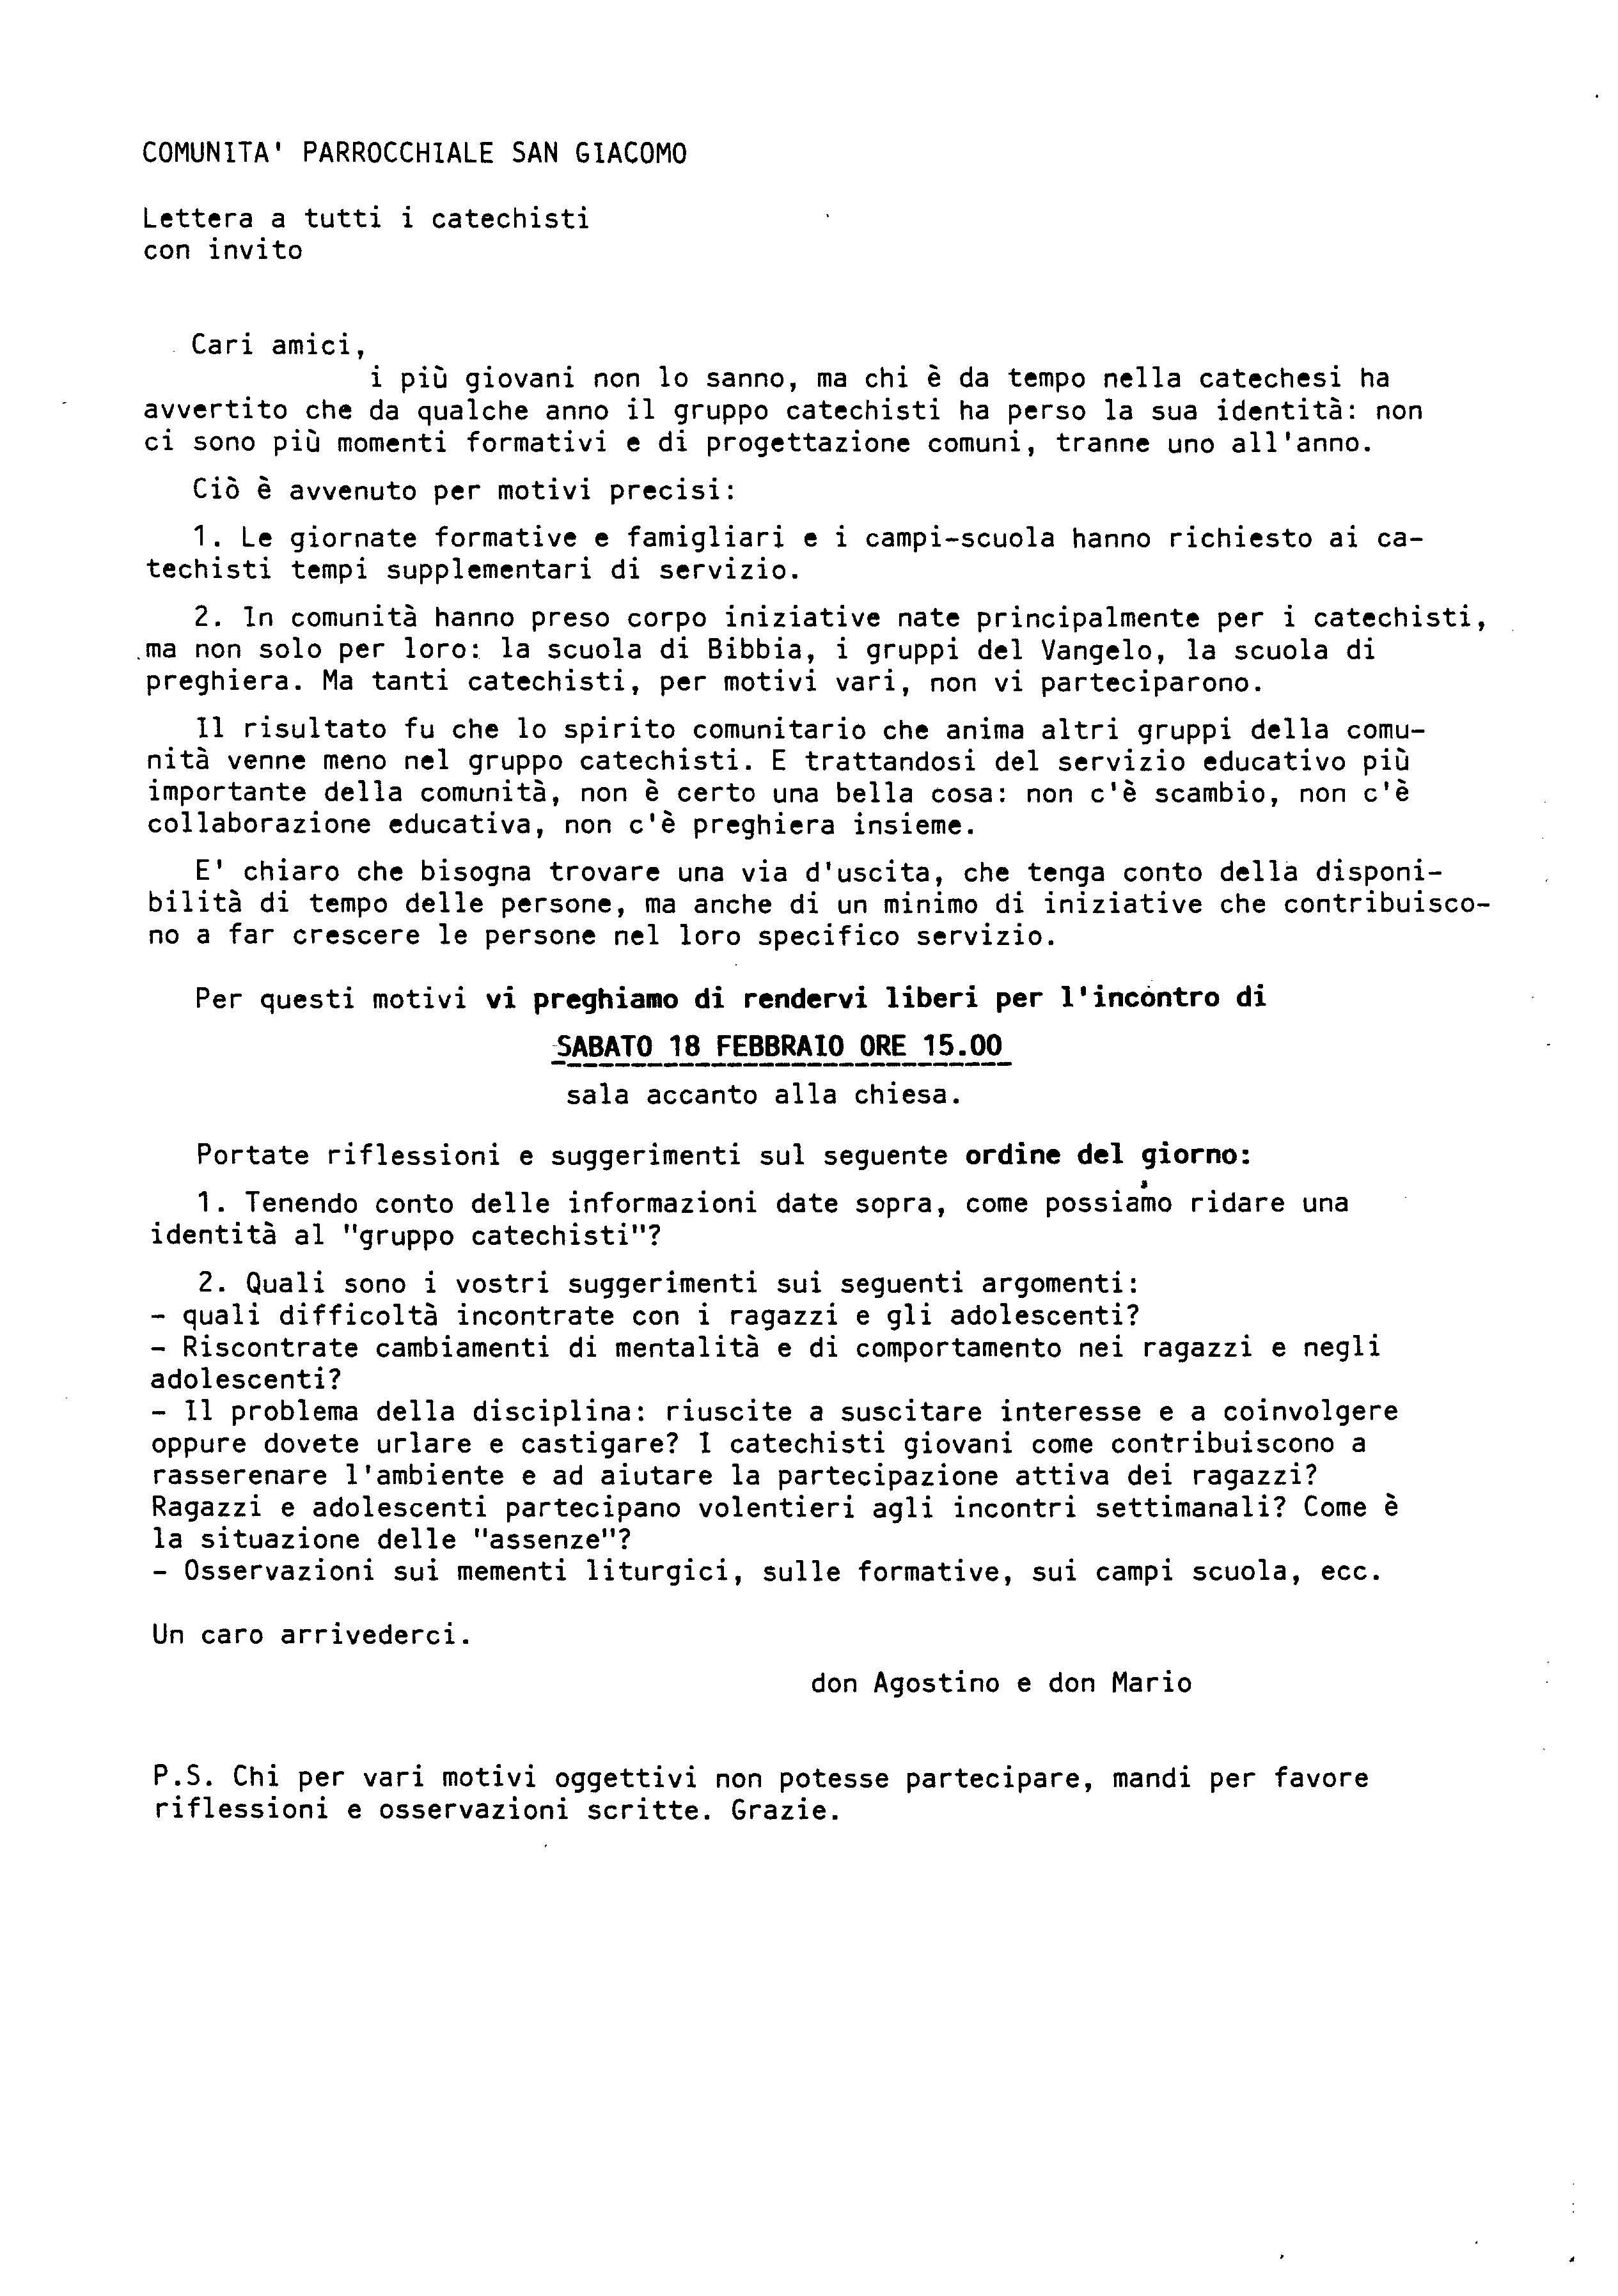 Lettera_Catechisti_1990.pdf